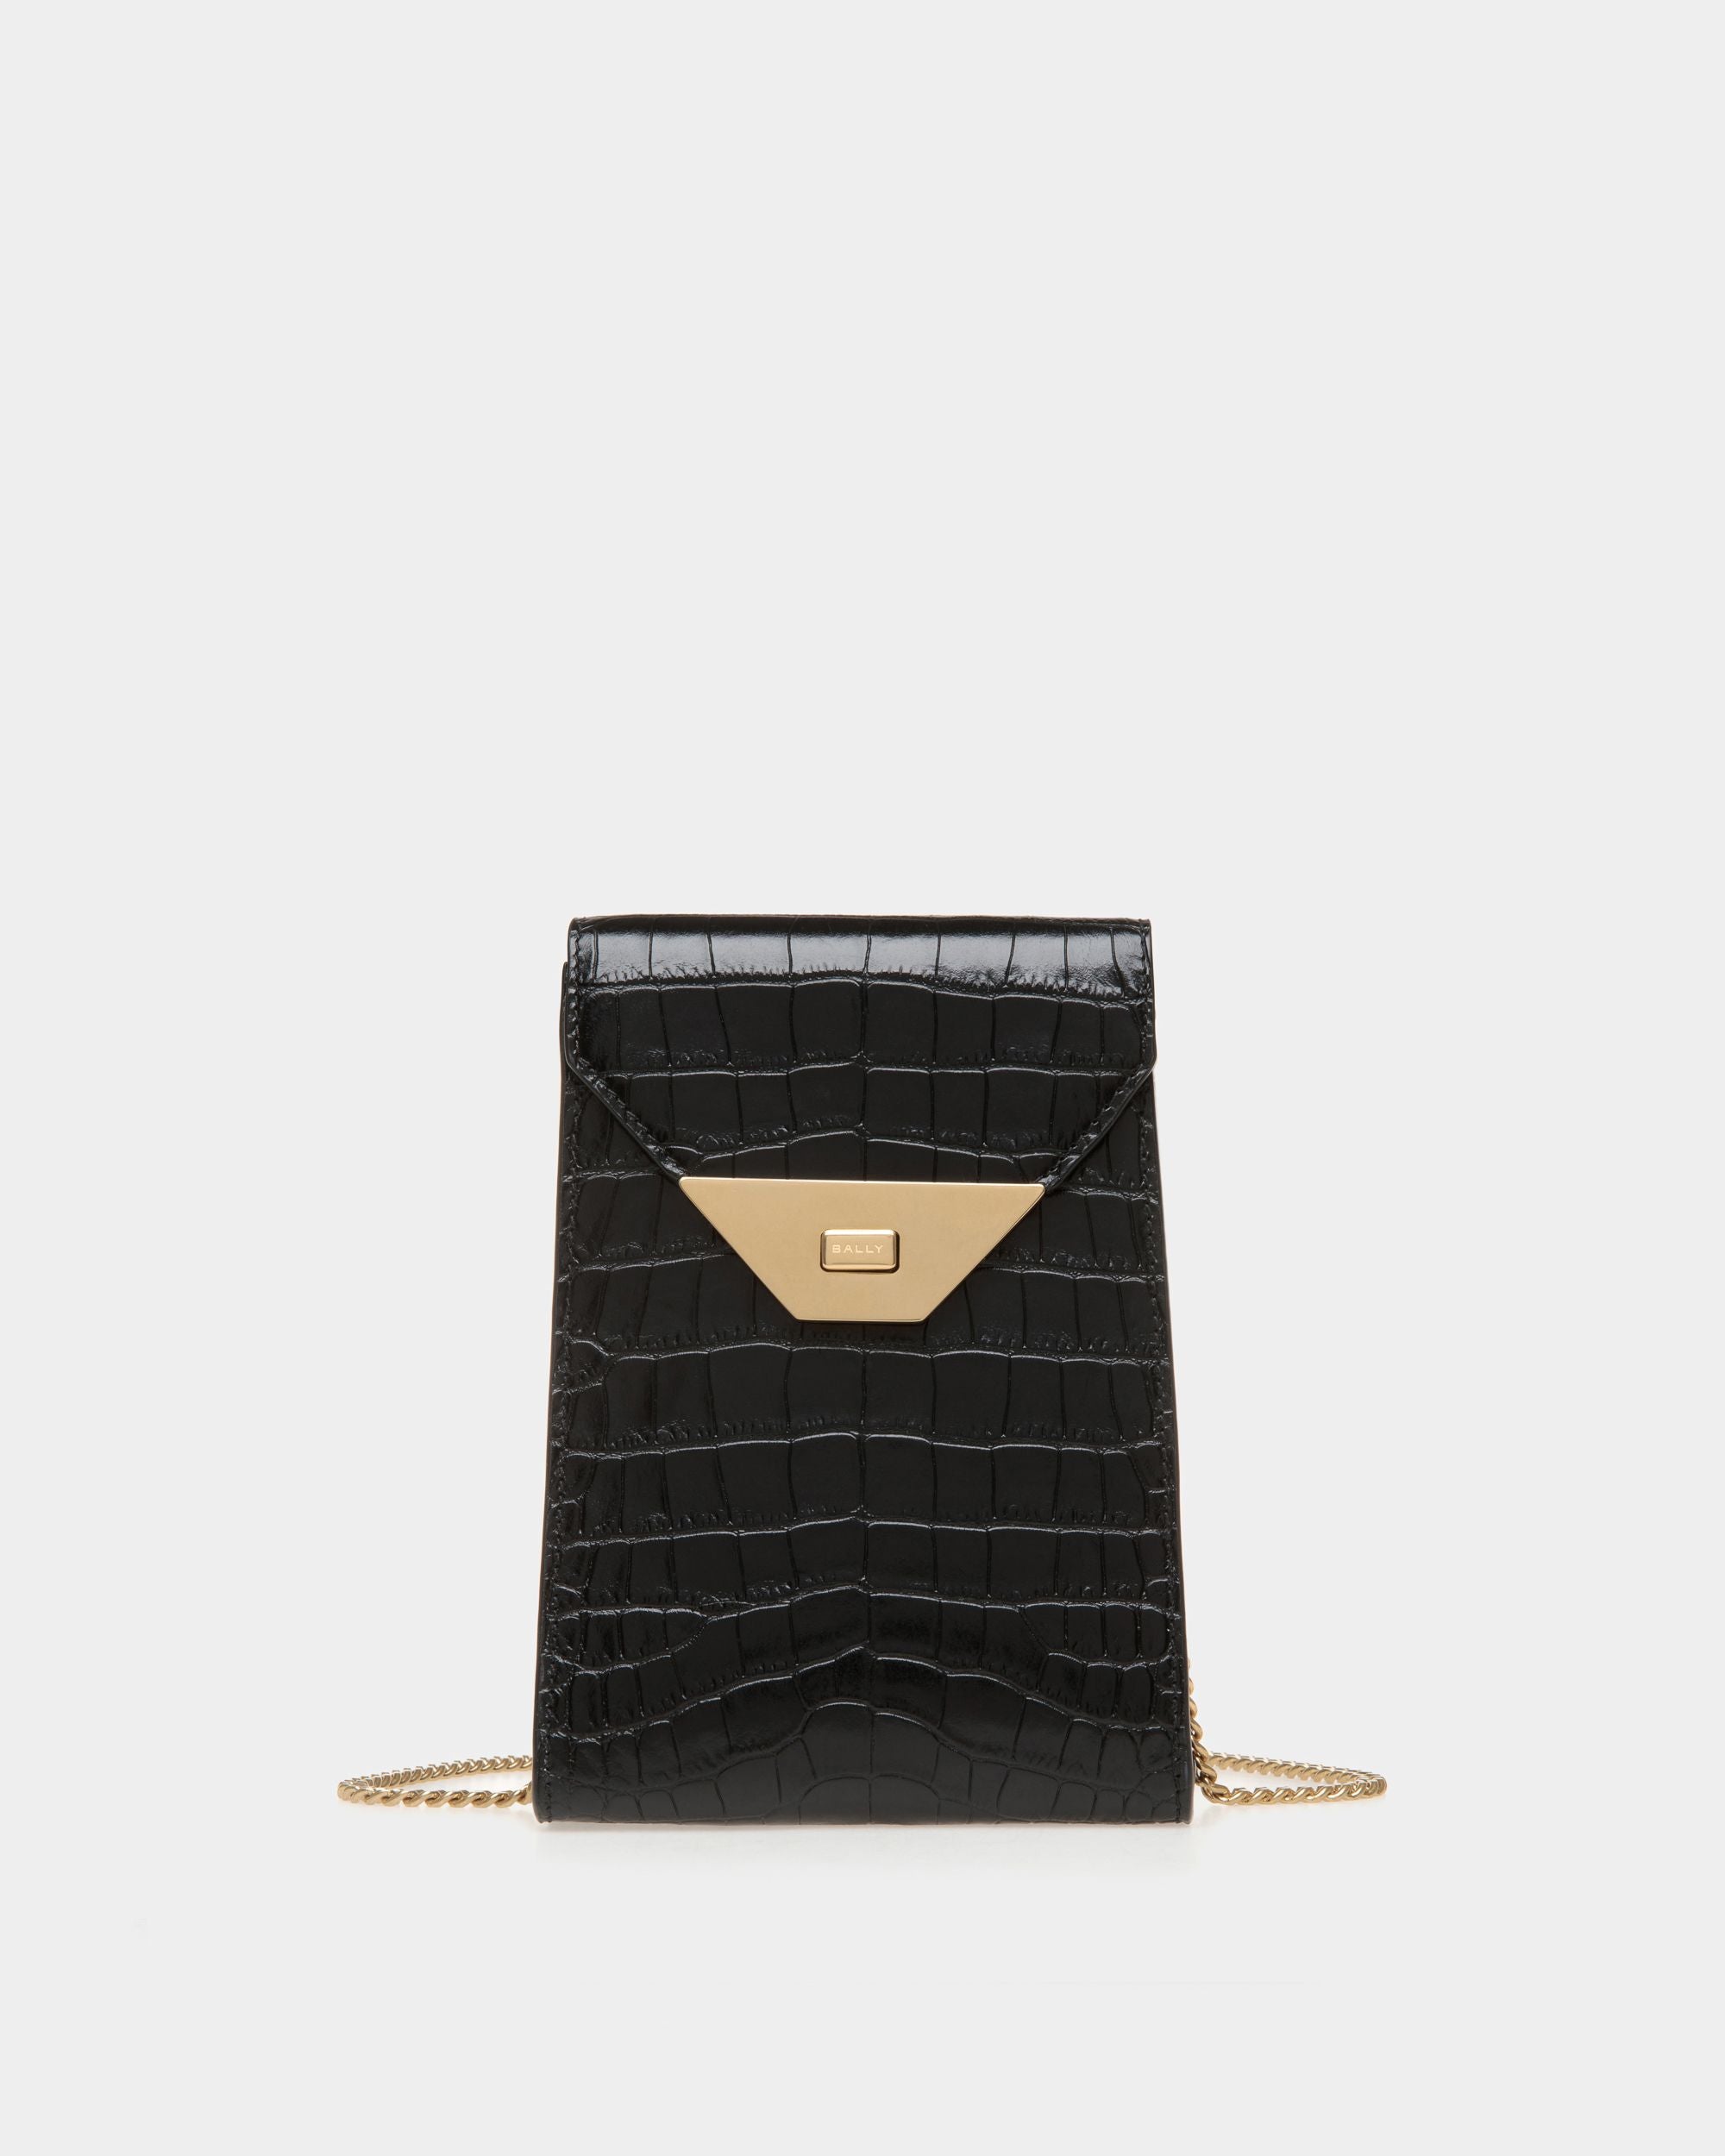 Tilt | Smartphone-Tasche für Damen aus schwarzem Leder mit Kroko-Print | Bally | Still Life Vorderseite